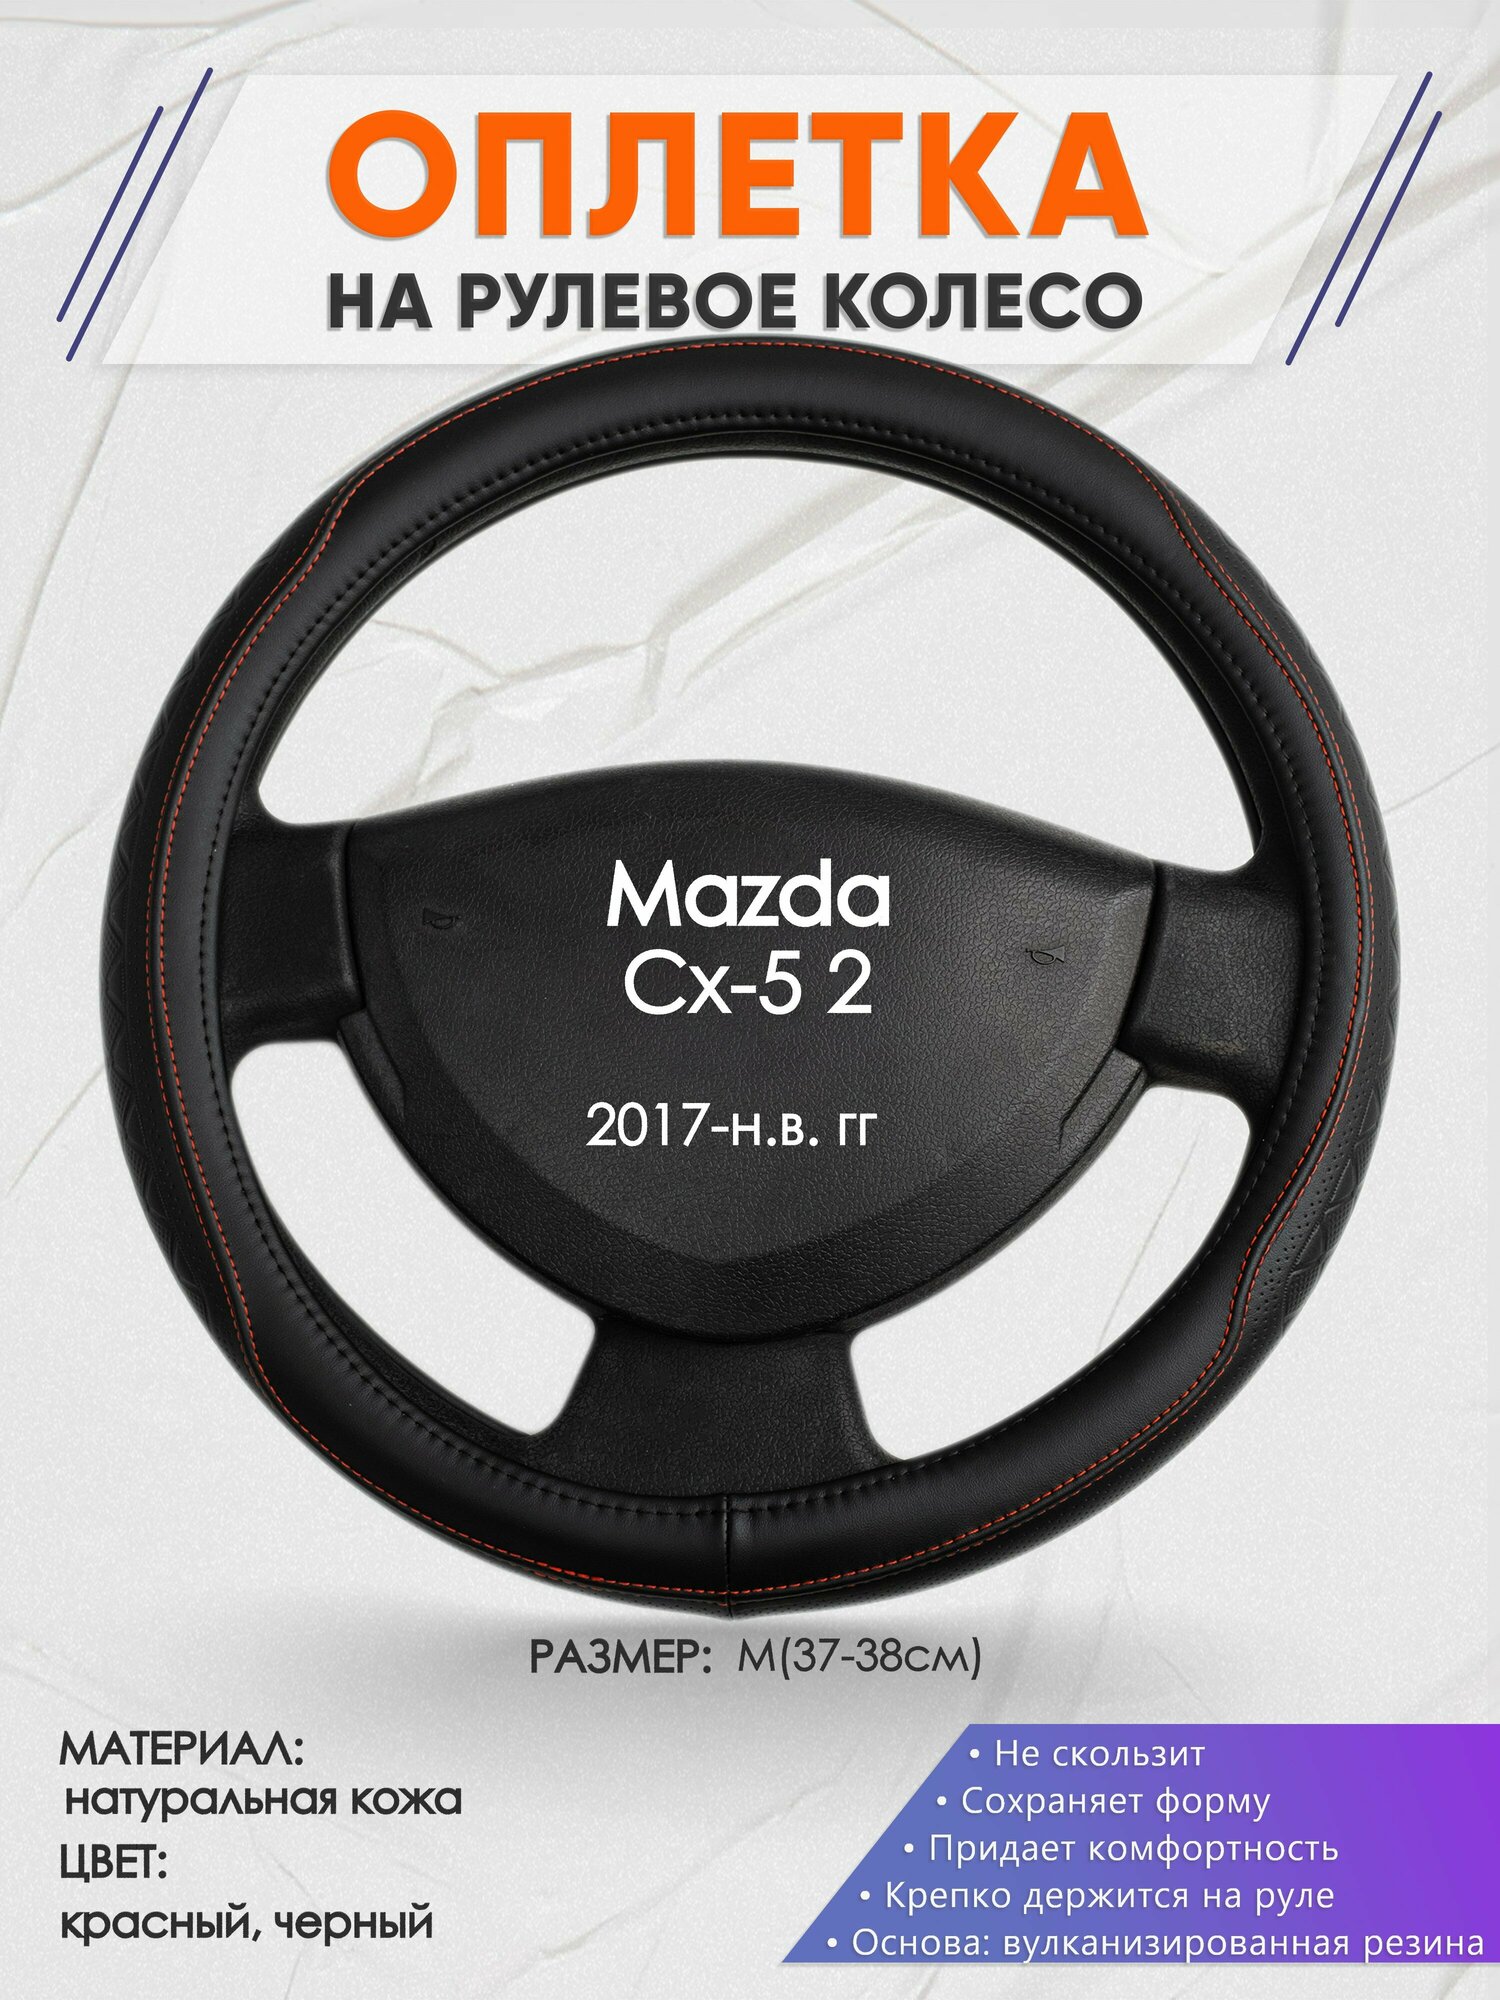 Оплетка на руль для Mazda Cx-5 2(Мазда сх 5 2) 2017-н. в, M(37-38см), Натуральная кожа 90